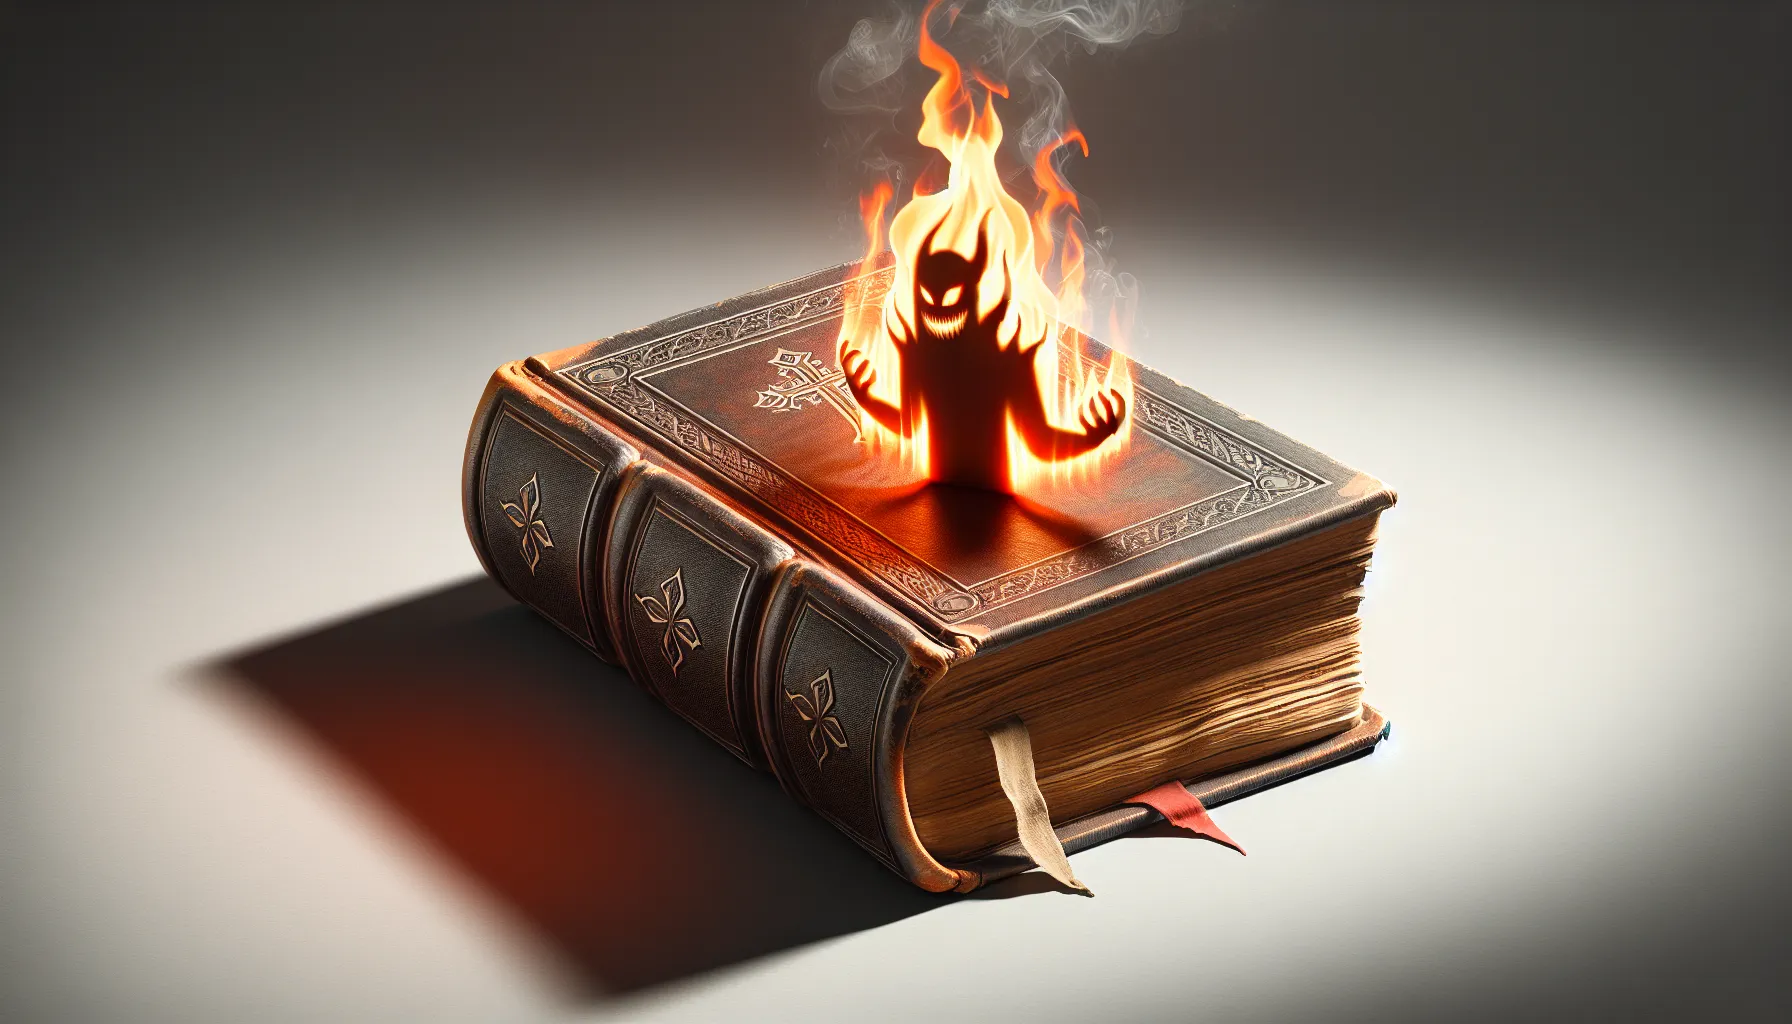 Imagen de un libro antiguo con una llama de fuego y una sombra siniestra en la portada